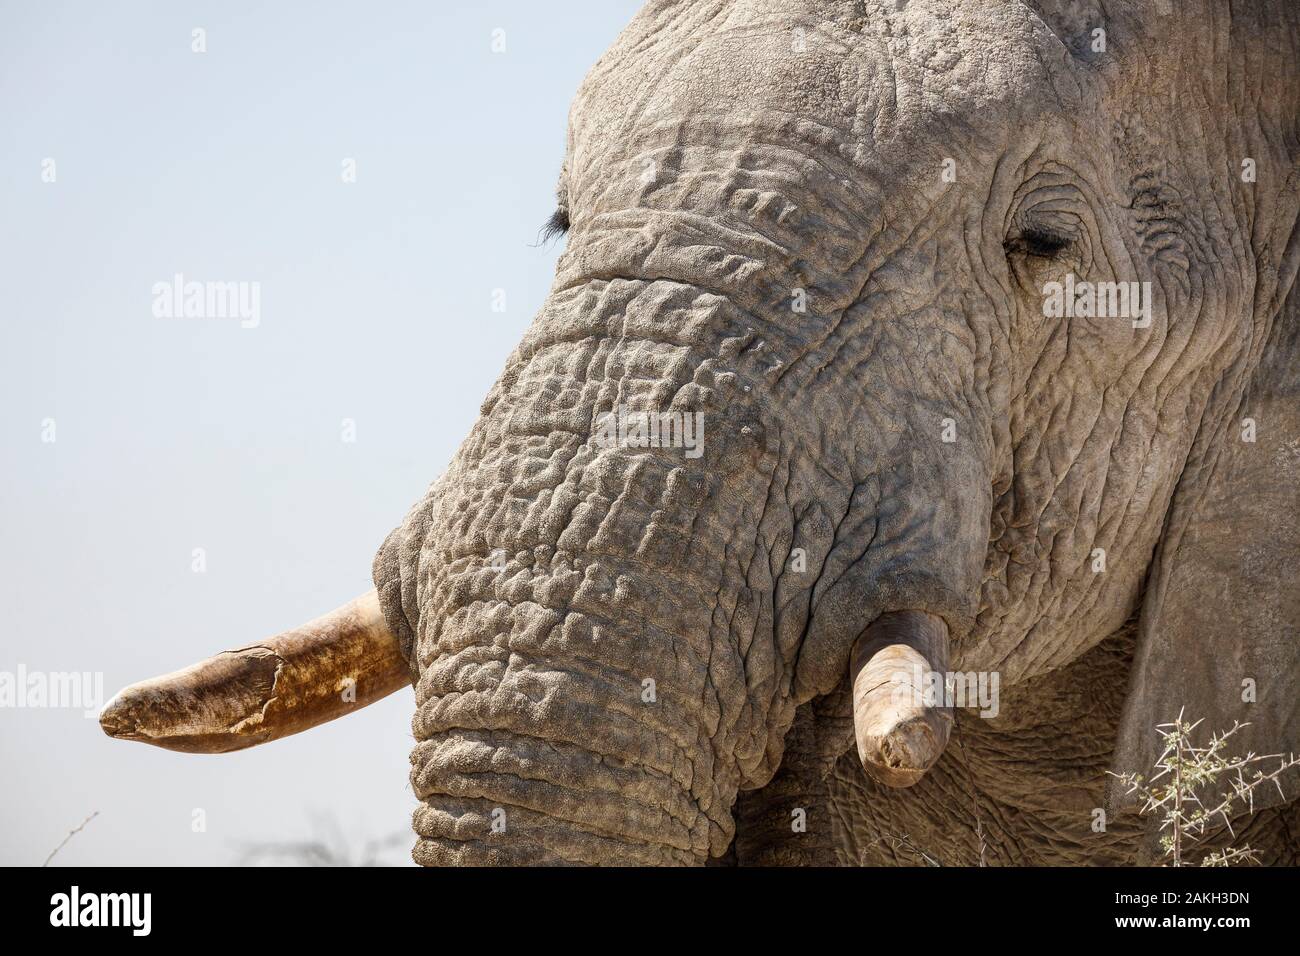 La Namibie, Oshikoto province, Etosha National Park, bush africain elephant (Loxodonta africana) Banque D'Images